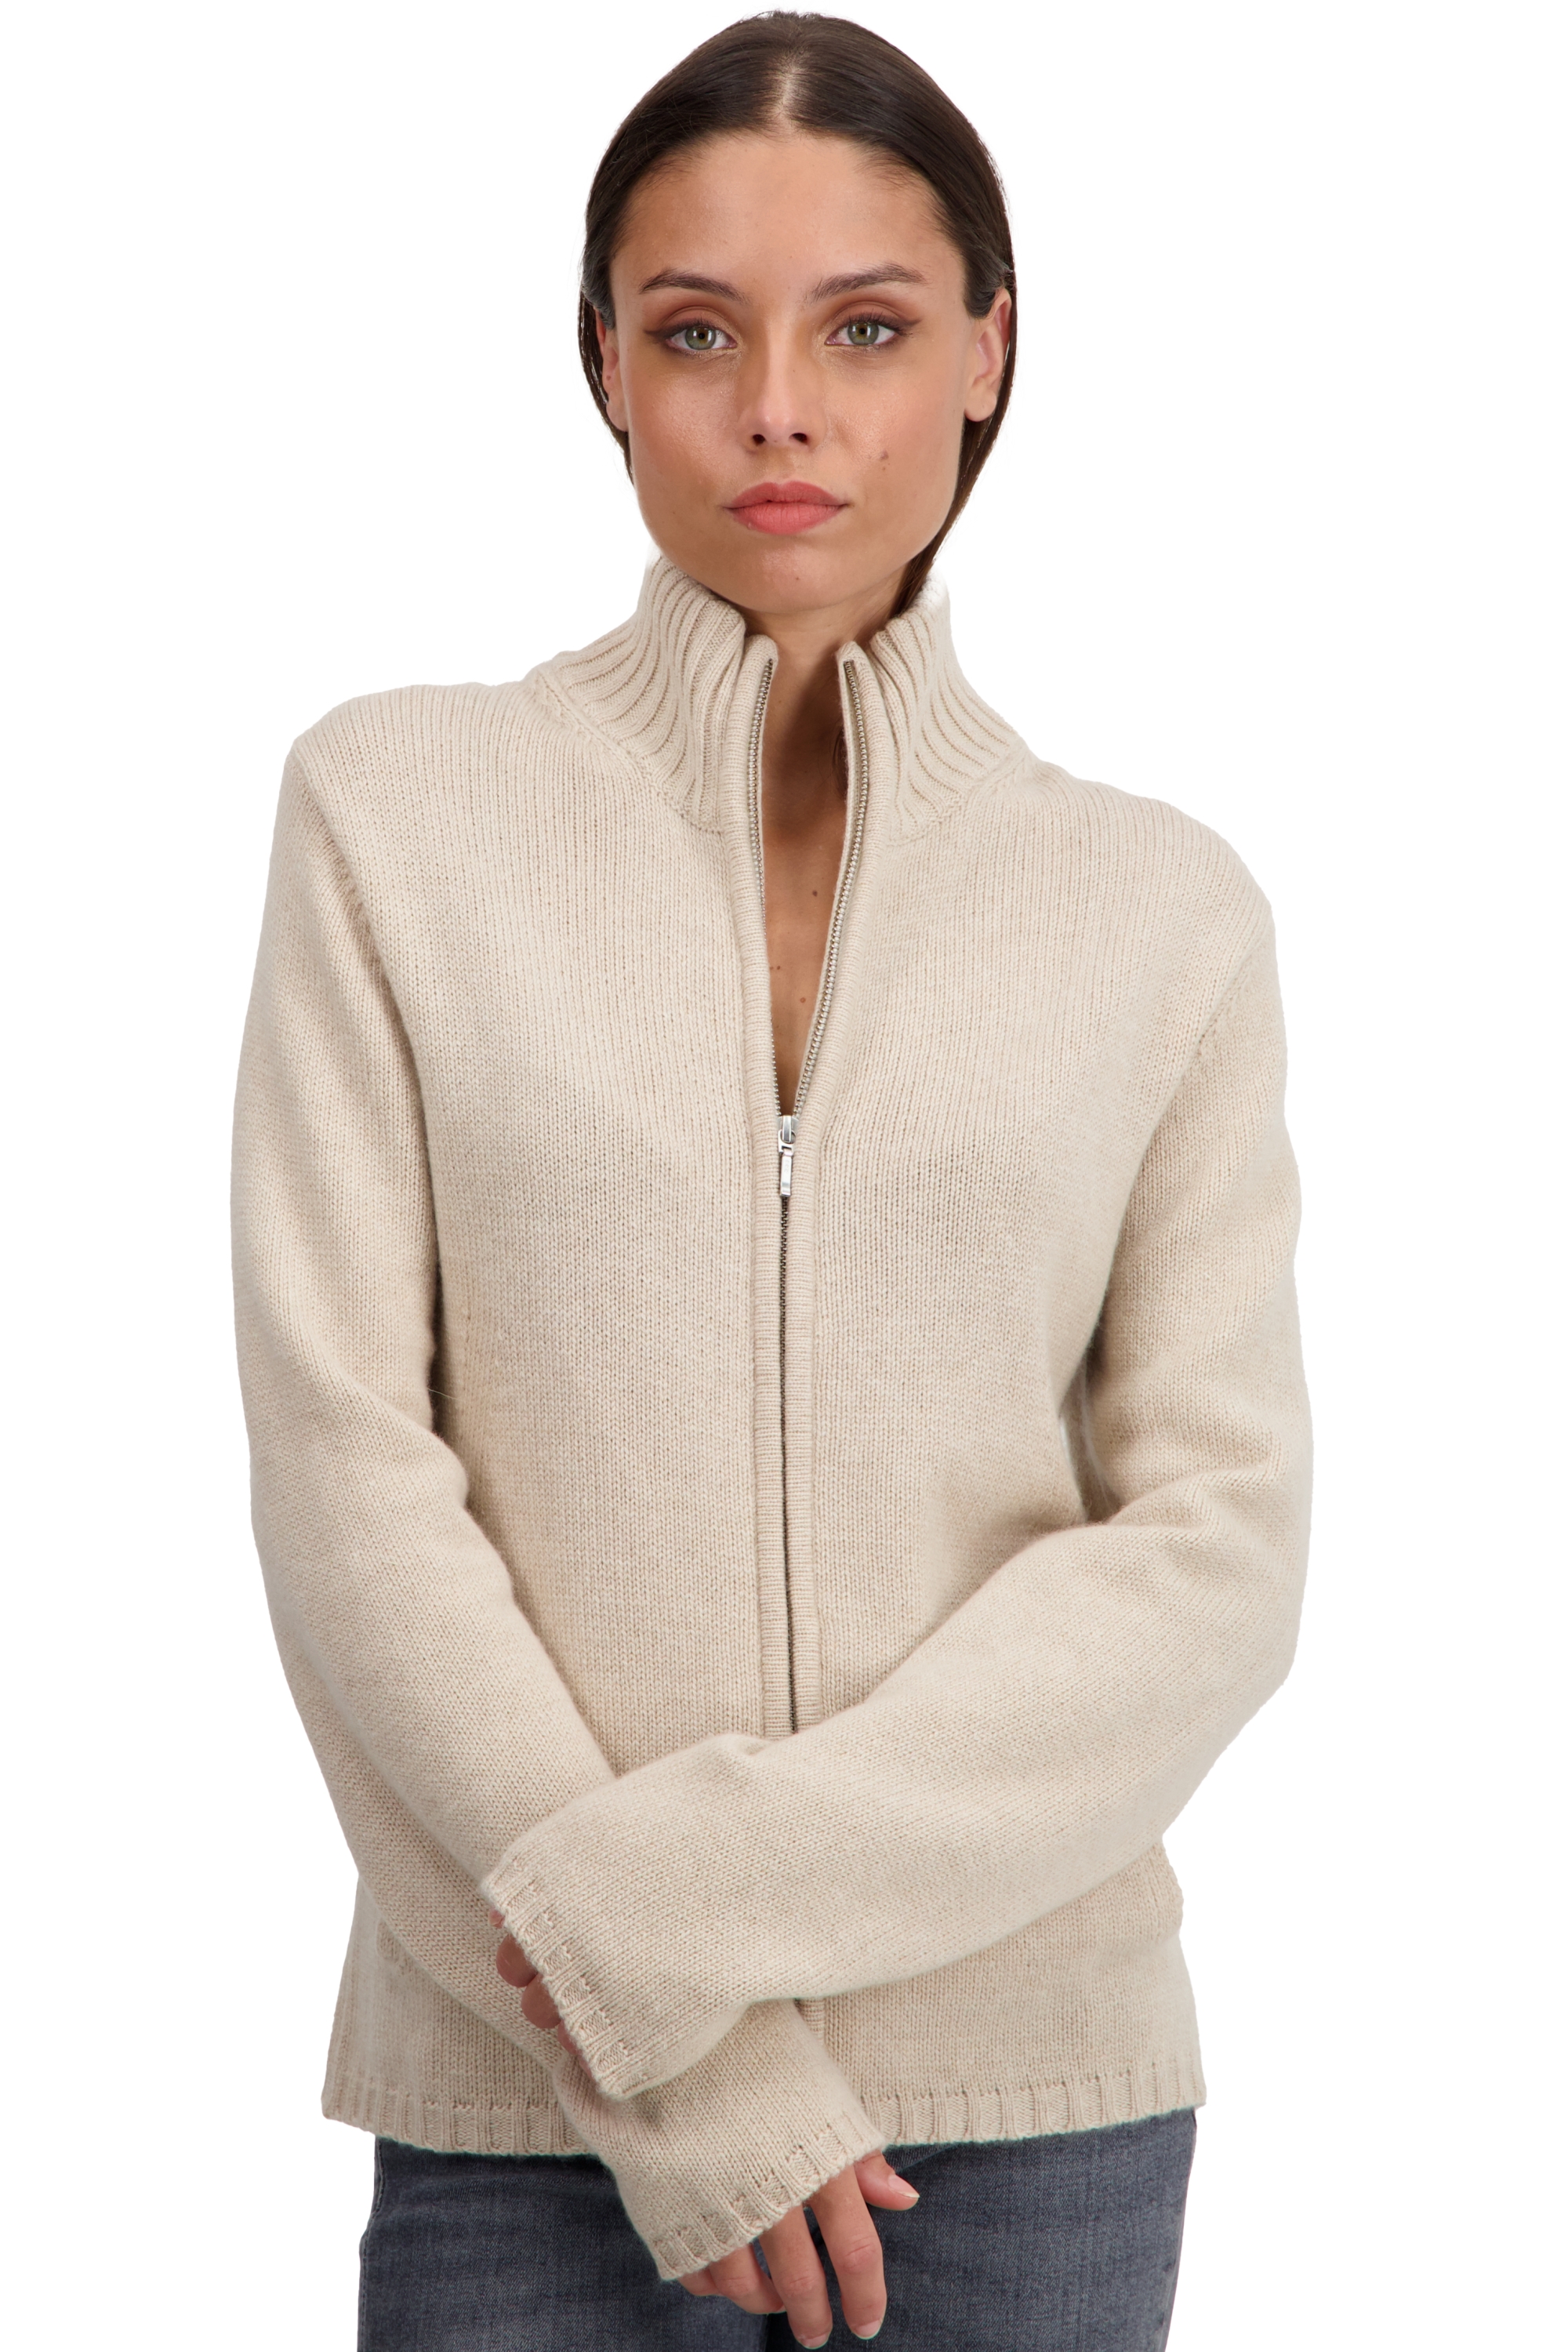 Cachemire pull femme zip capuche elodie natural beige xl